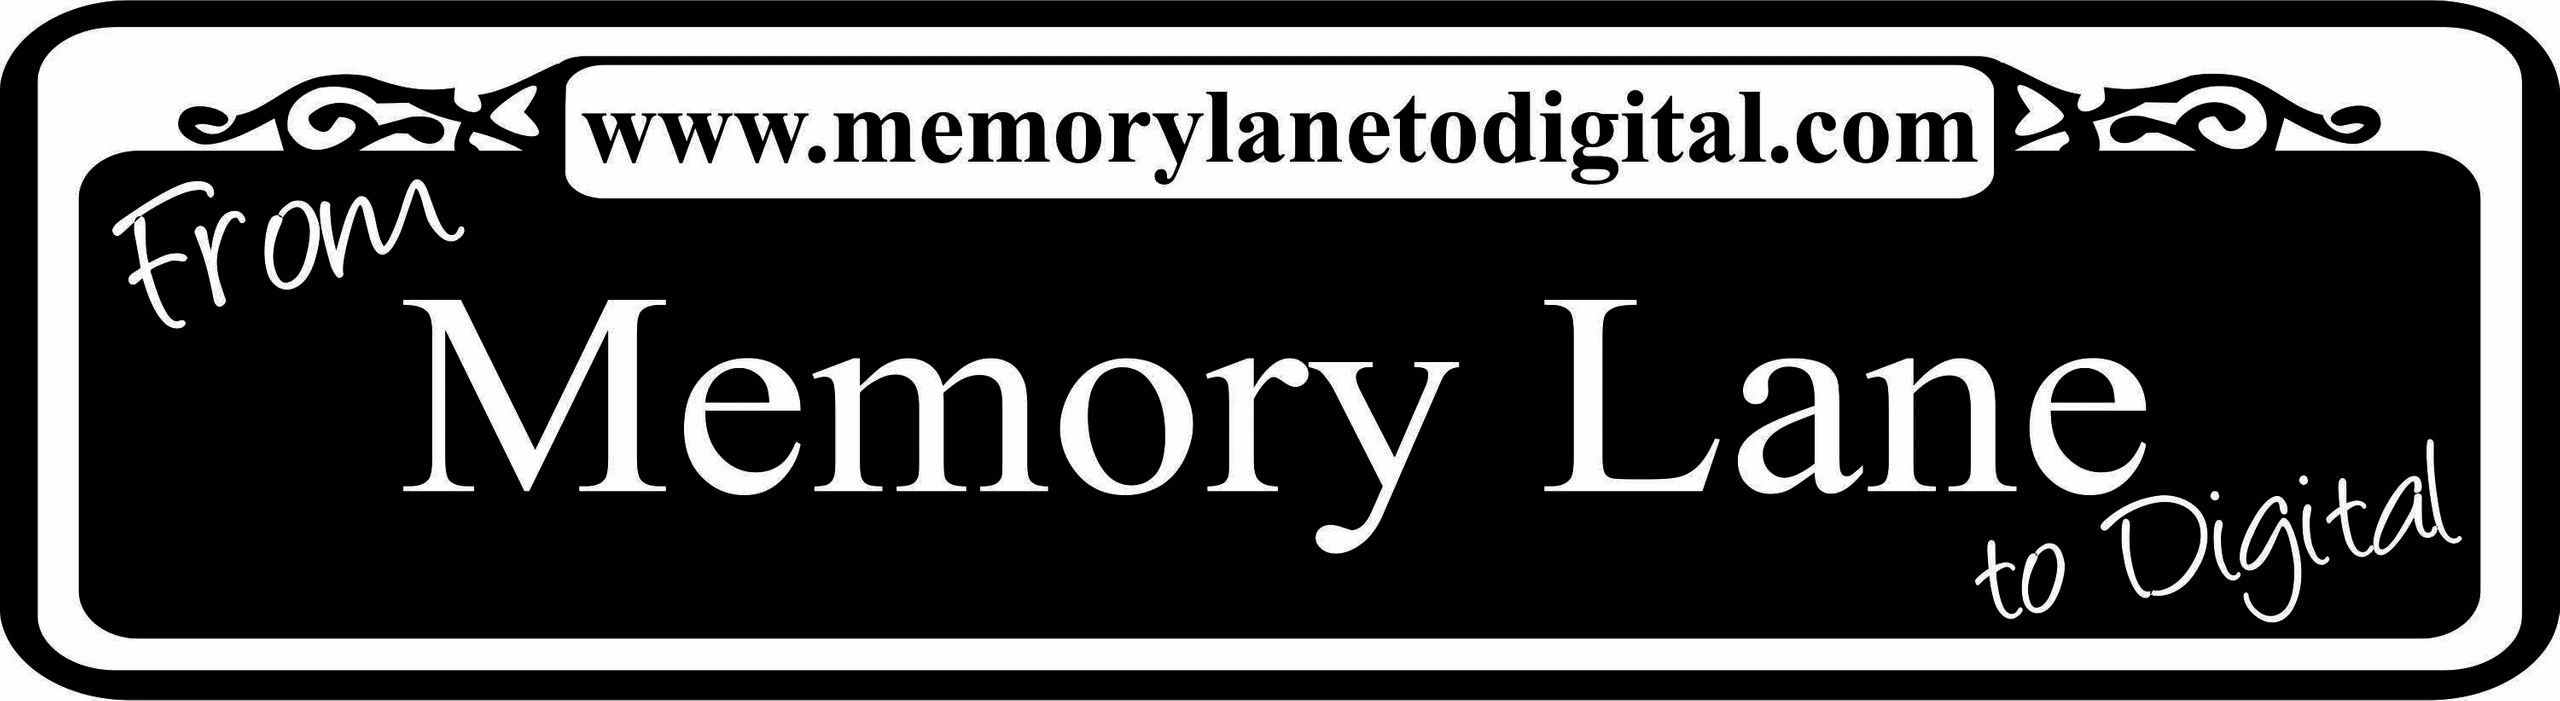 Memory Lane To Dvd